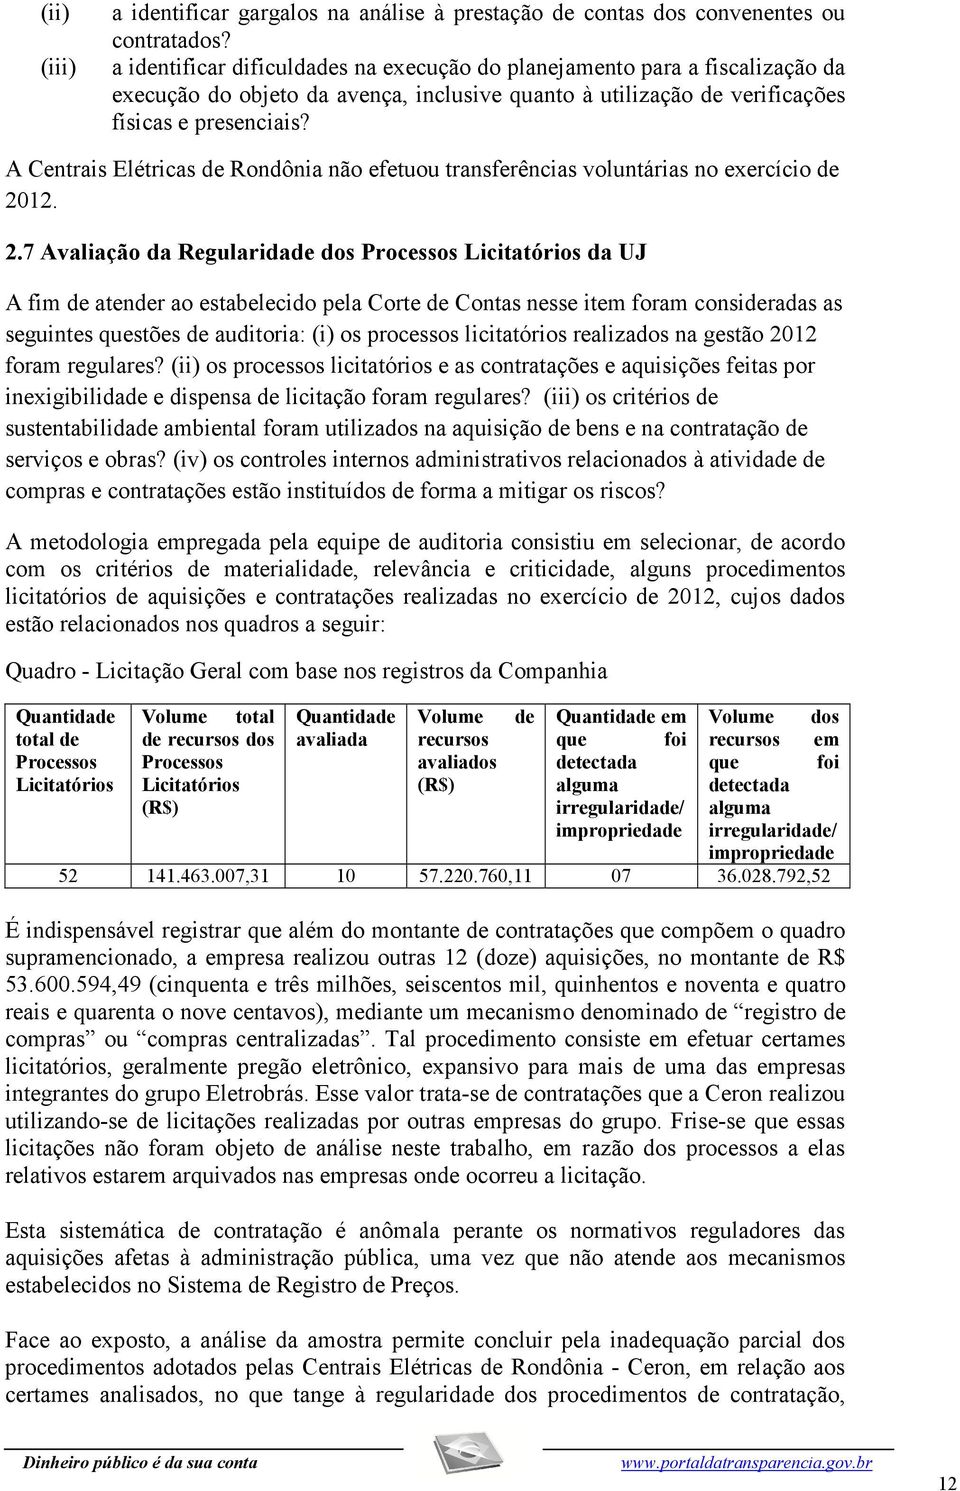 A Centrais Elétricas de Rondônia não efetuou transferências voluntárias no exercício de 20